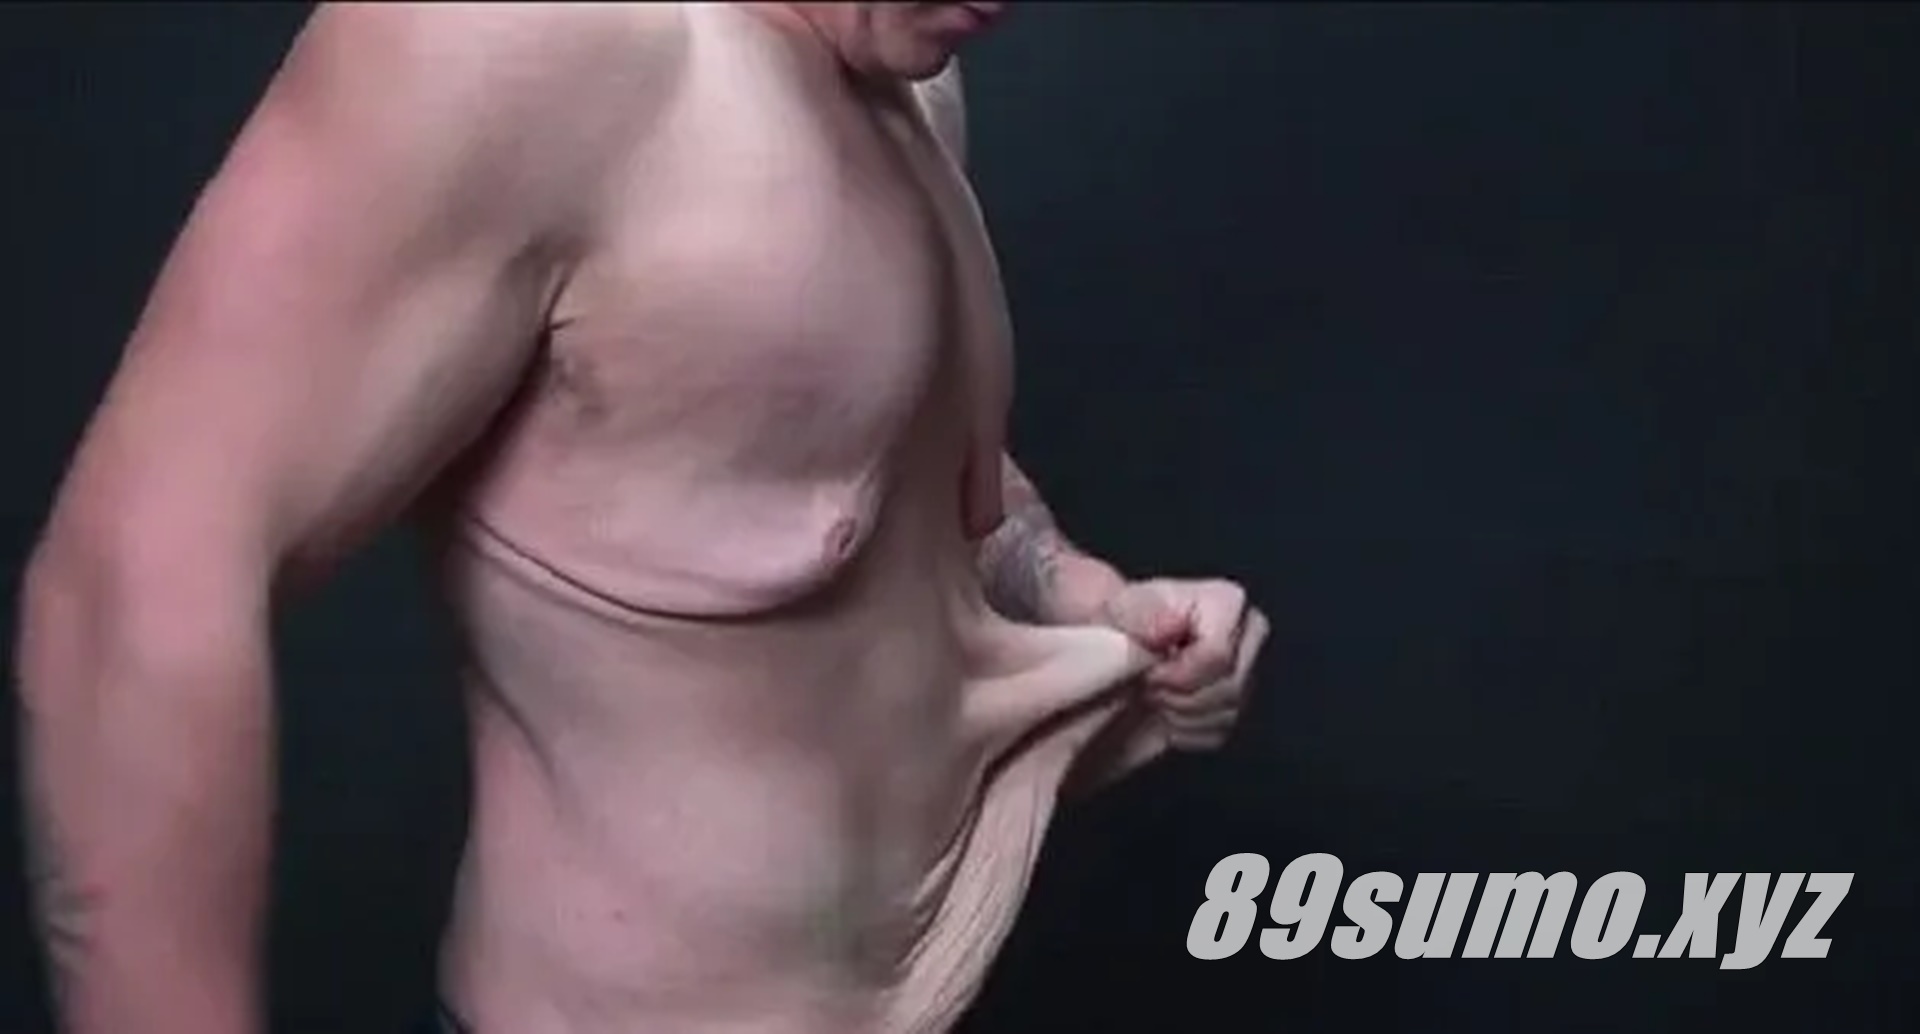 дряблая грудь у мужчин фото 50